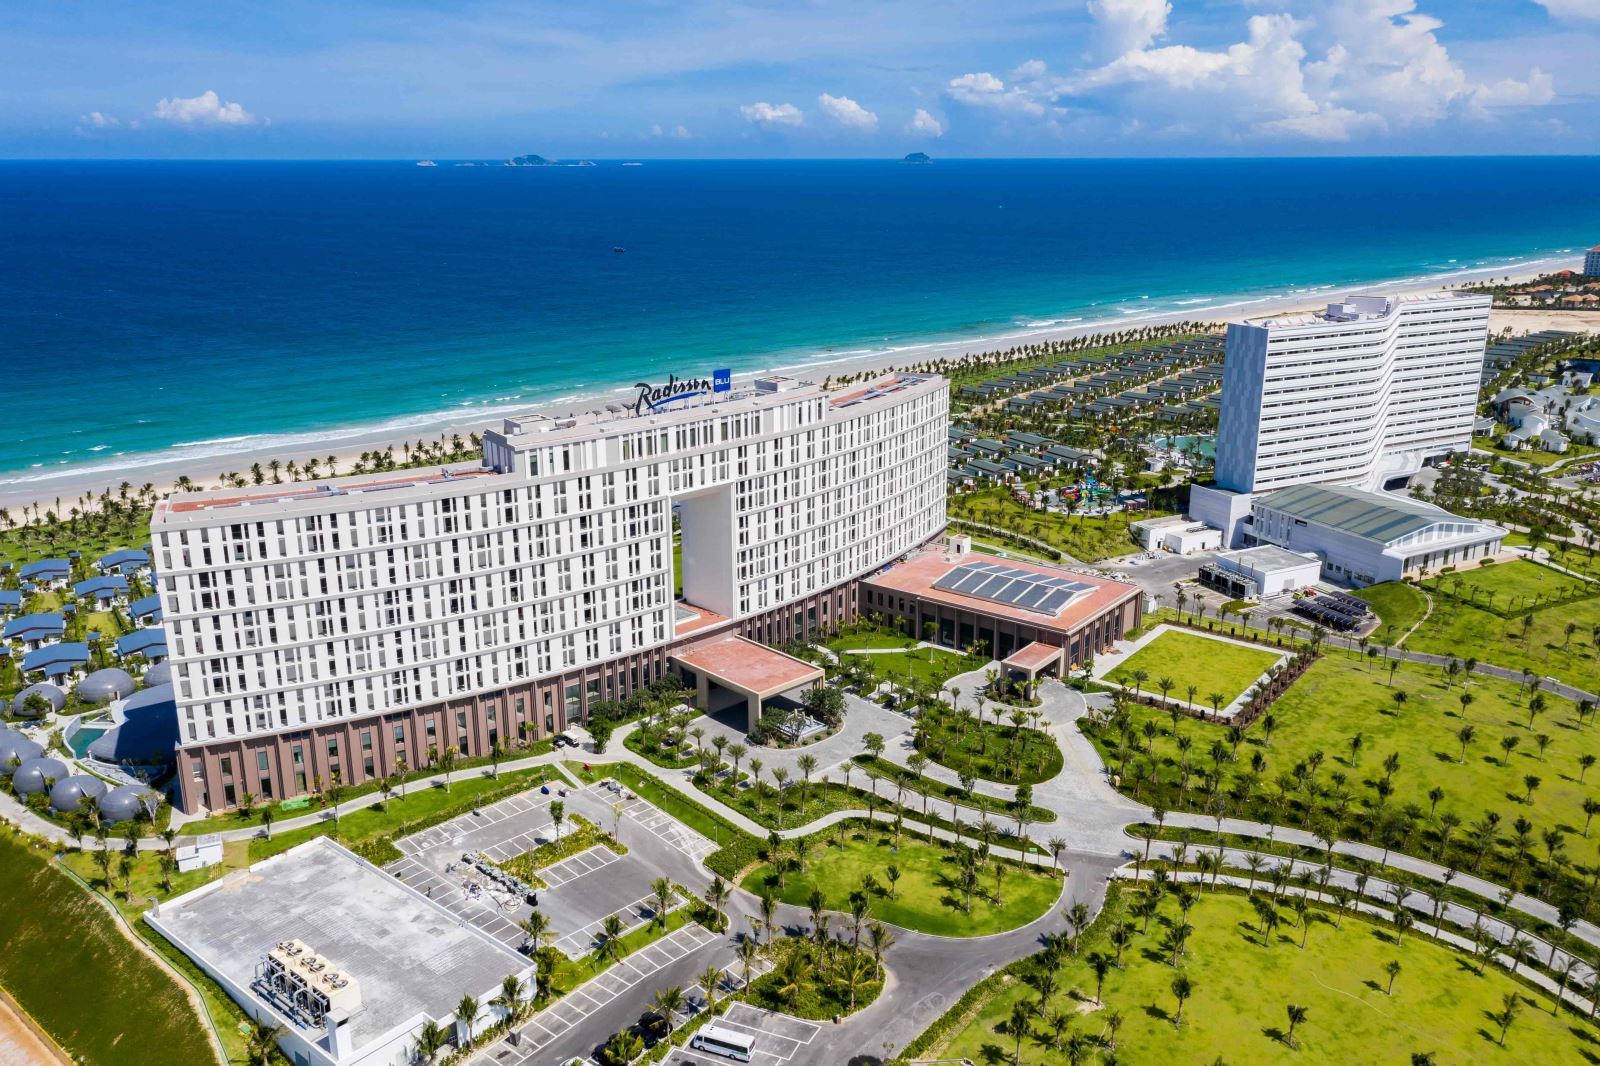 Quần thể khu nghỉ dưỡngp/nghỉ dưỡng 5 sao quốc tế Mövenpick Resort Cam Ranh và Radisson Blu Resort Cam Ranh